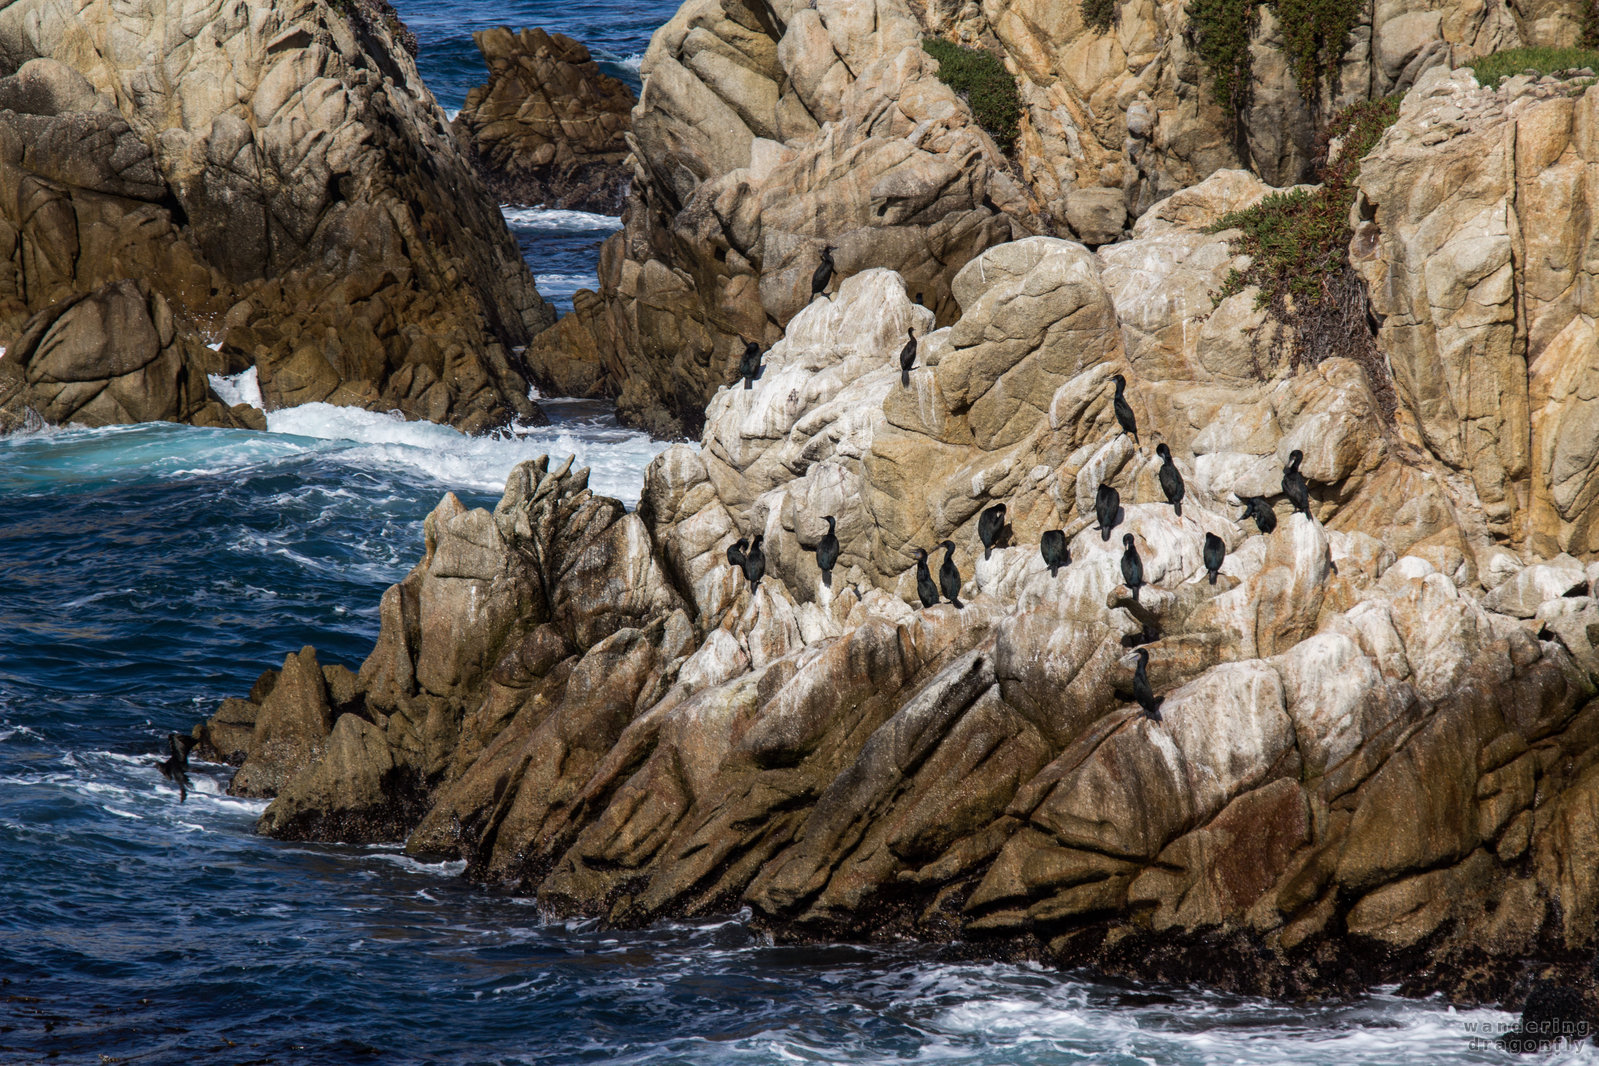 Sunbathing cormorants -- bird, cliff, cormorant, ocean, rock, water